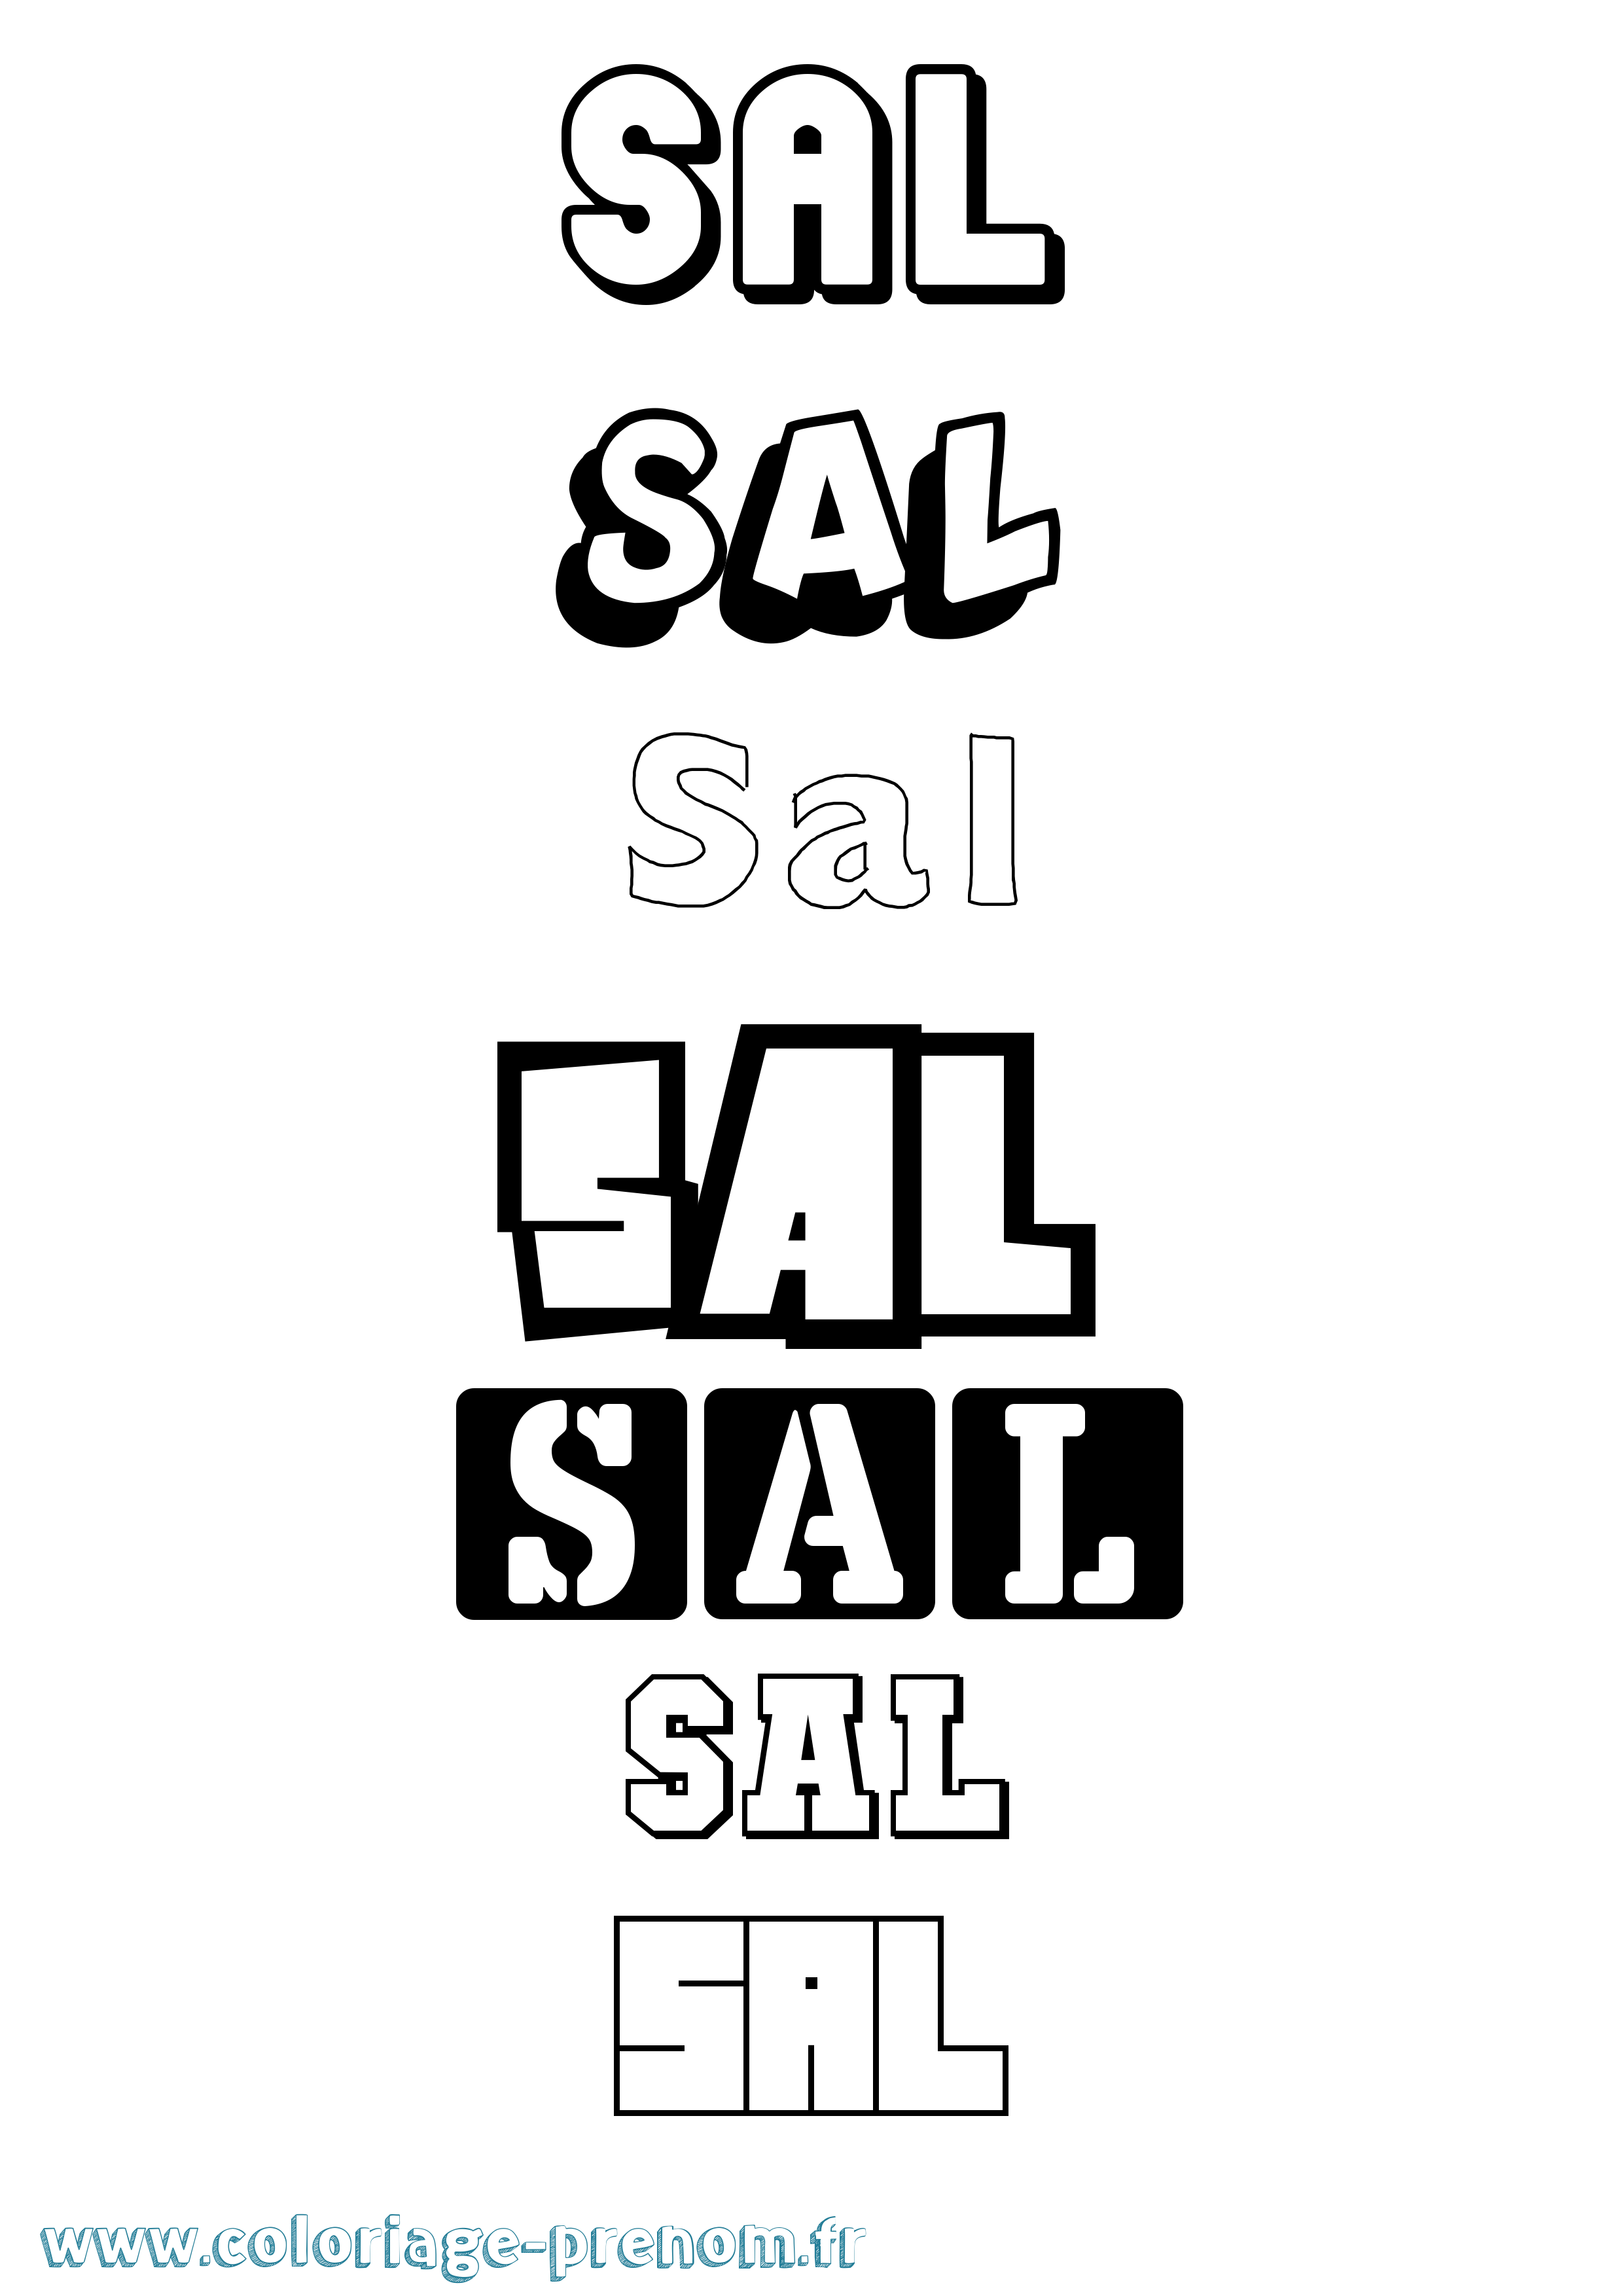 Coloriage prénom Sal Simple